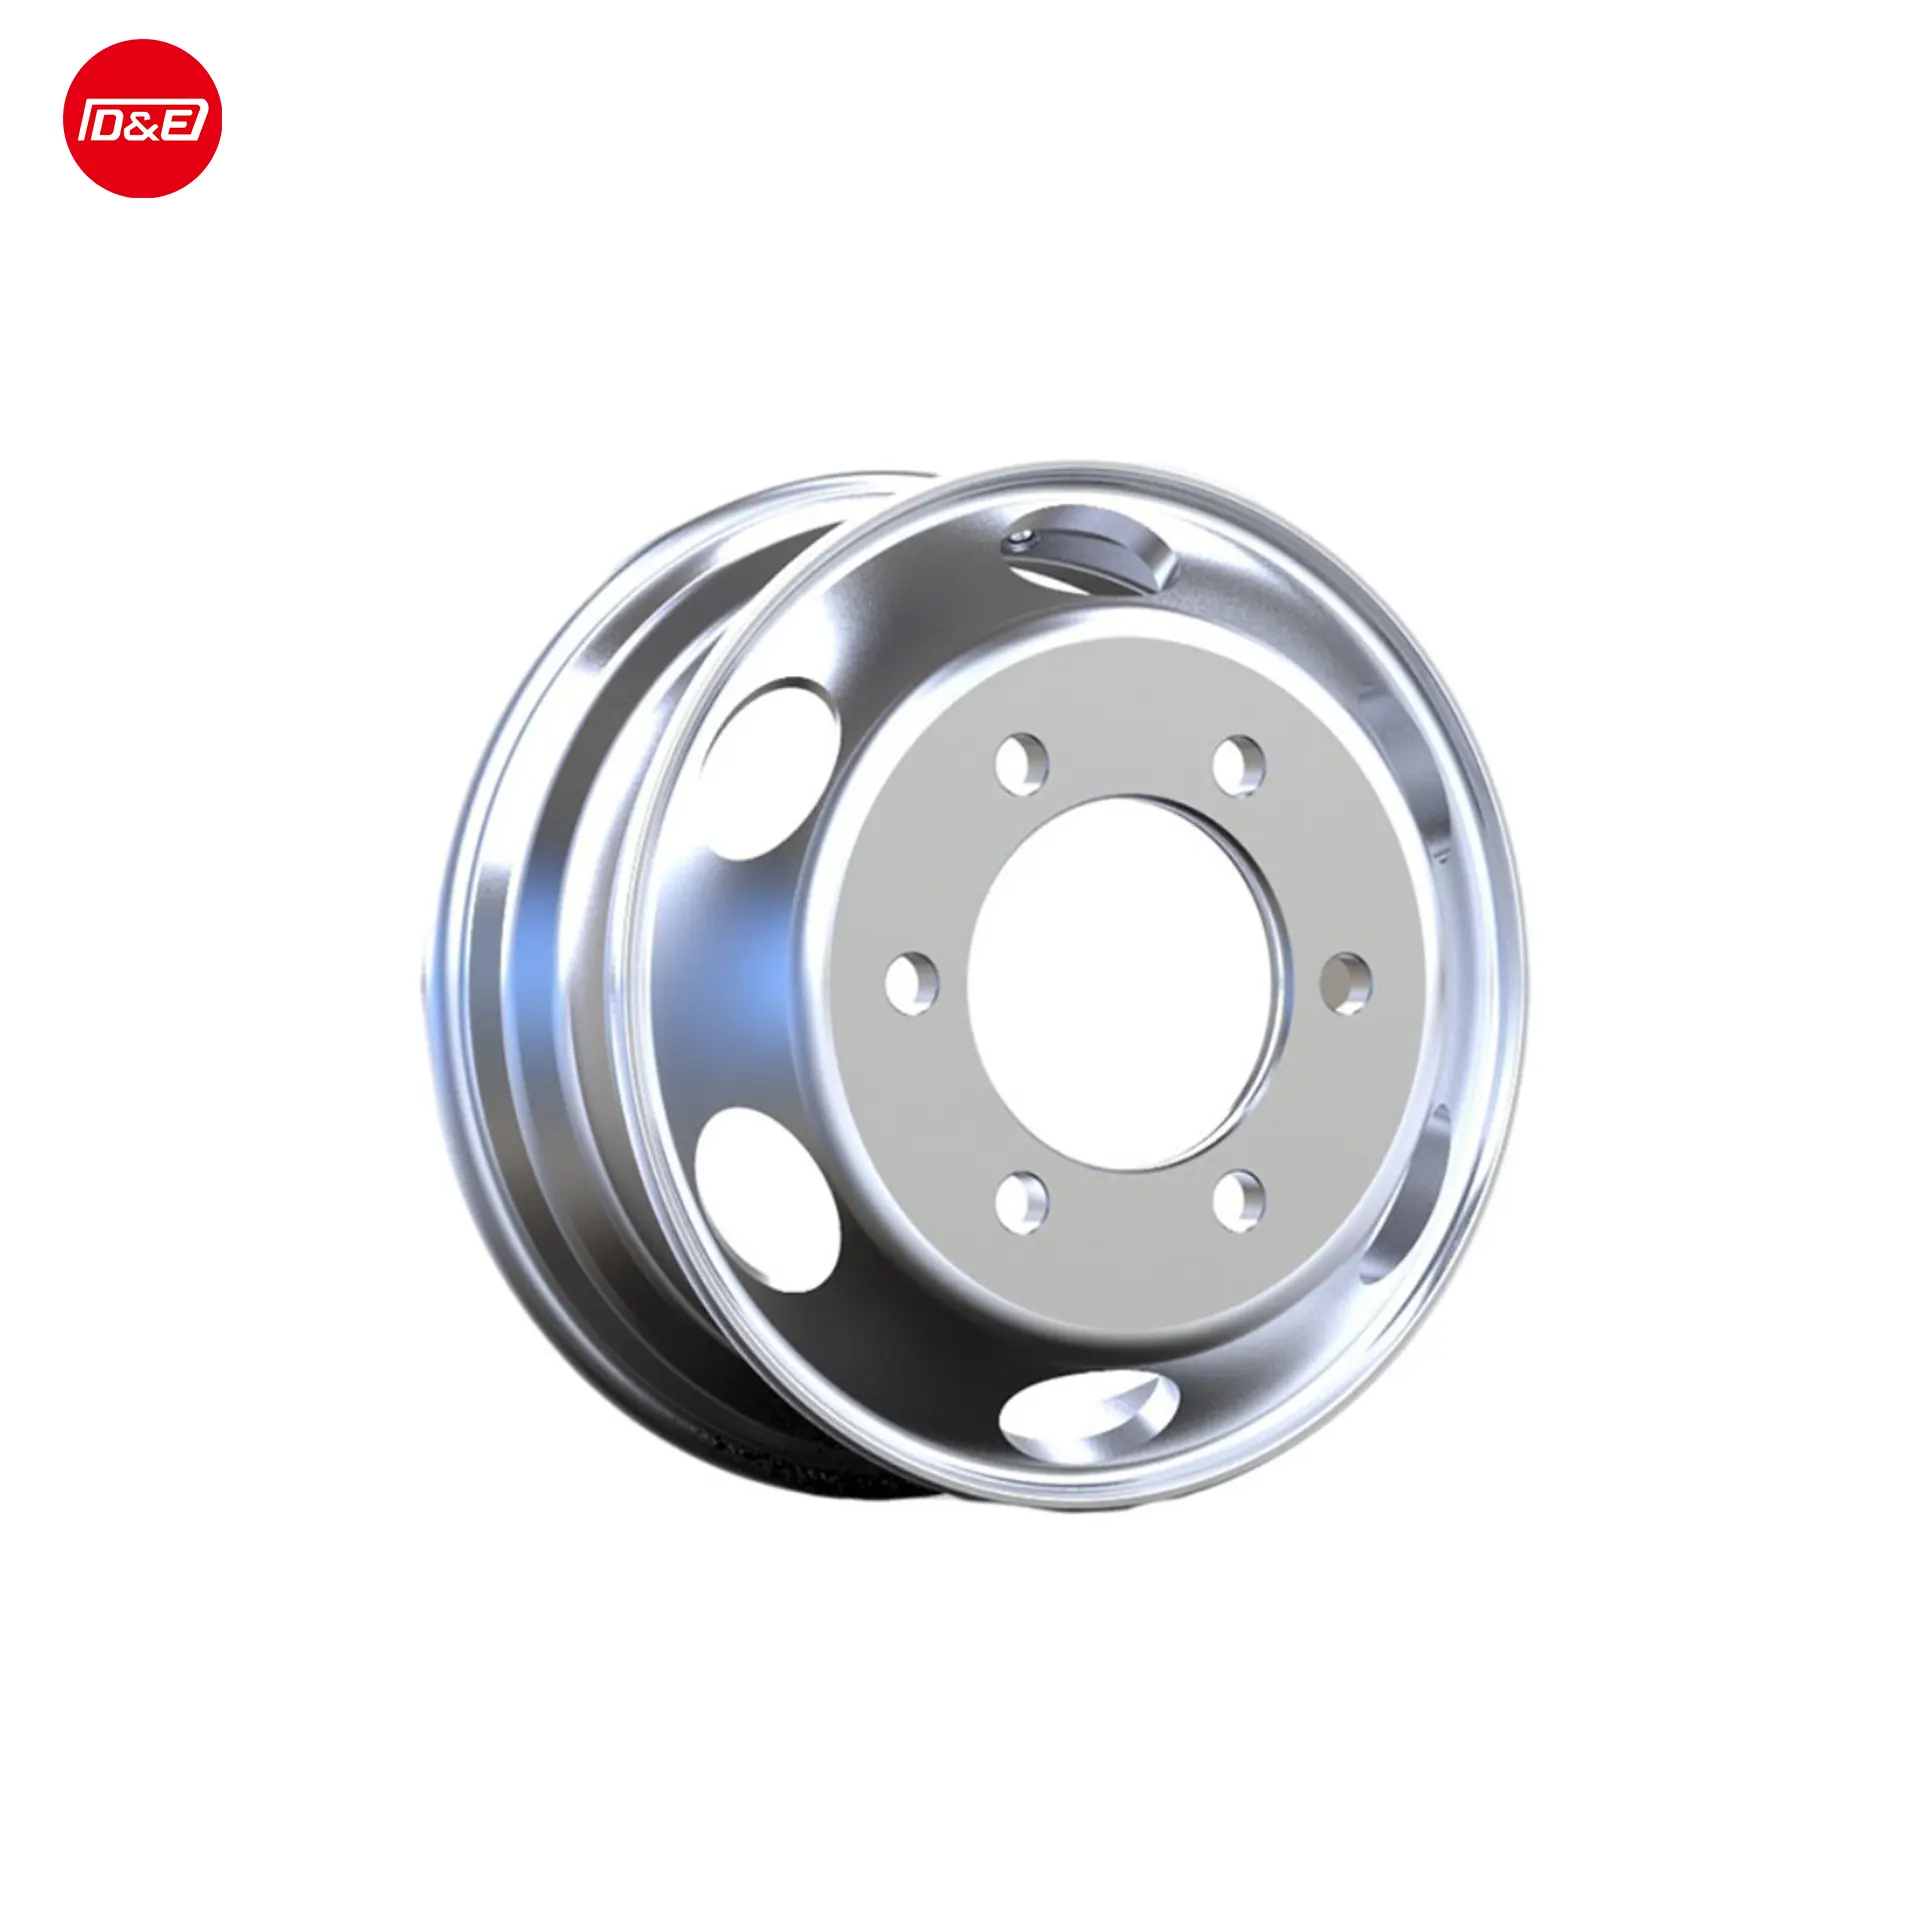 Алюминиевые колесные диски по индивидуальному заказу, Размер шины 16 * J, колесные диски для грузовиков повышенной грузоподъемности